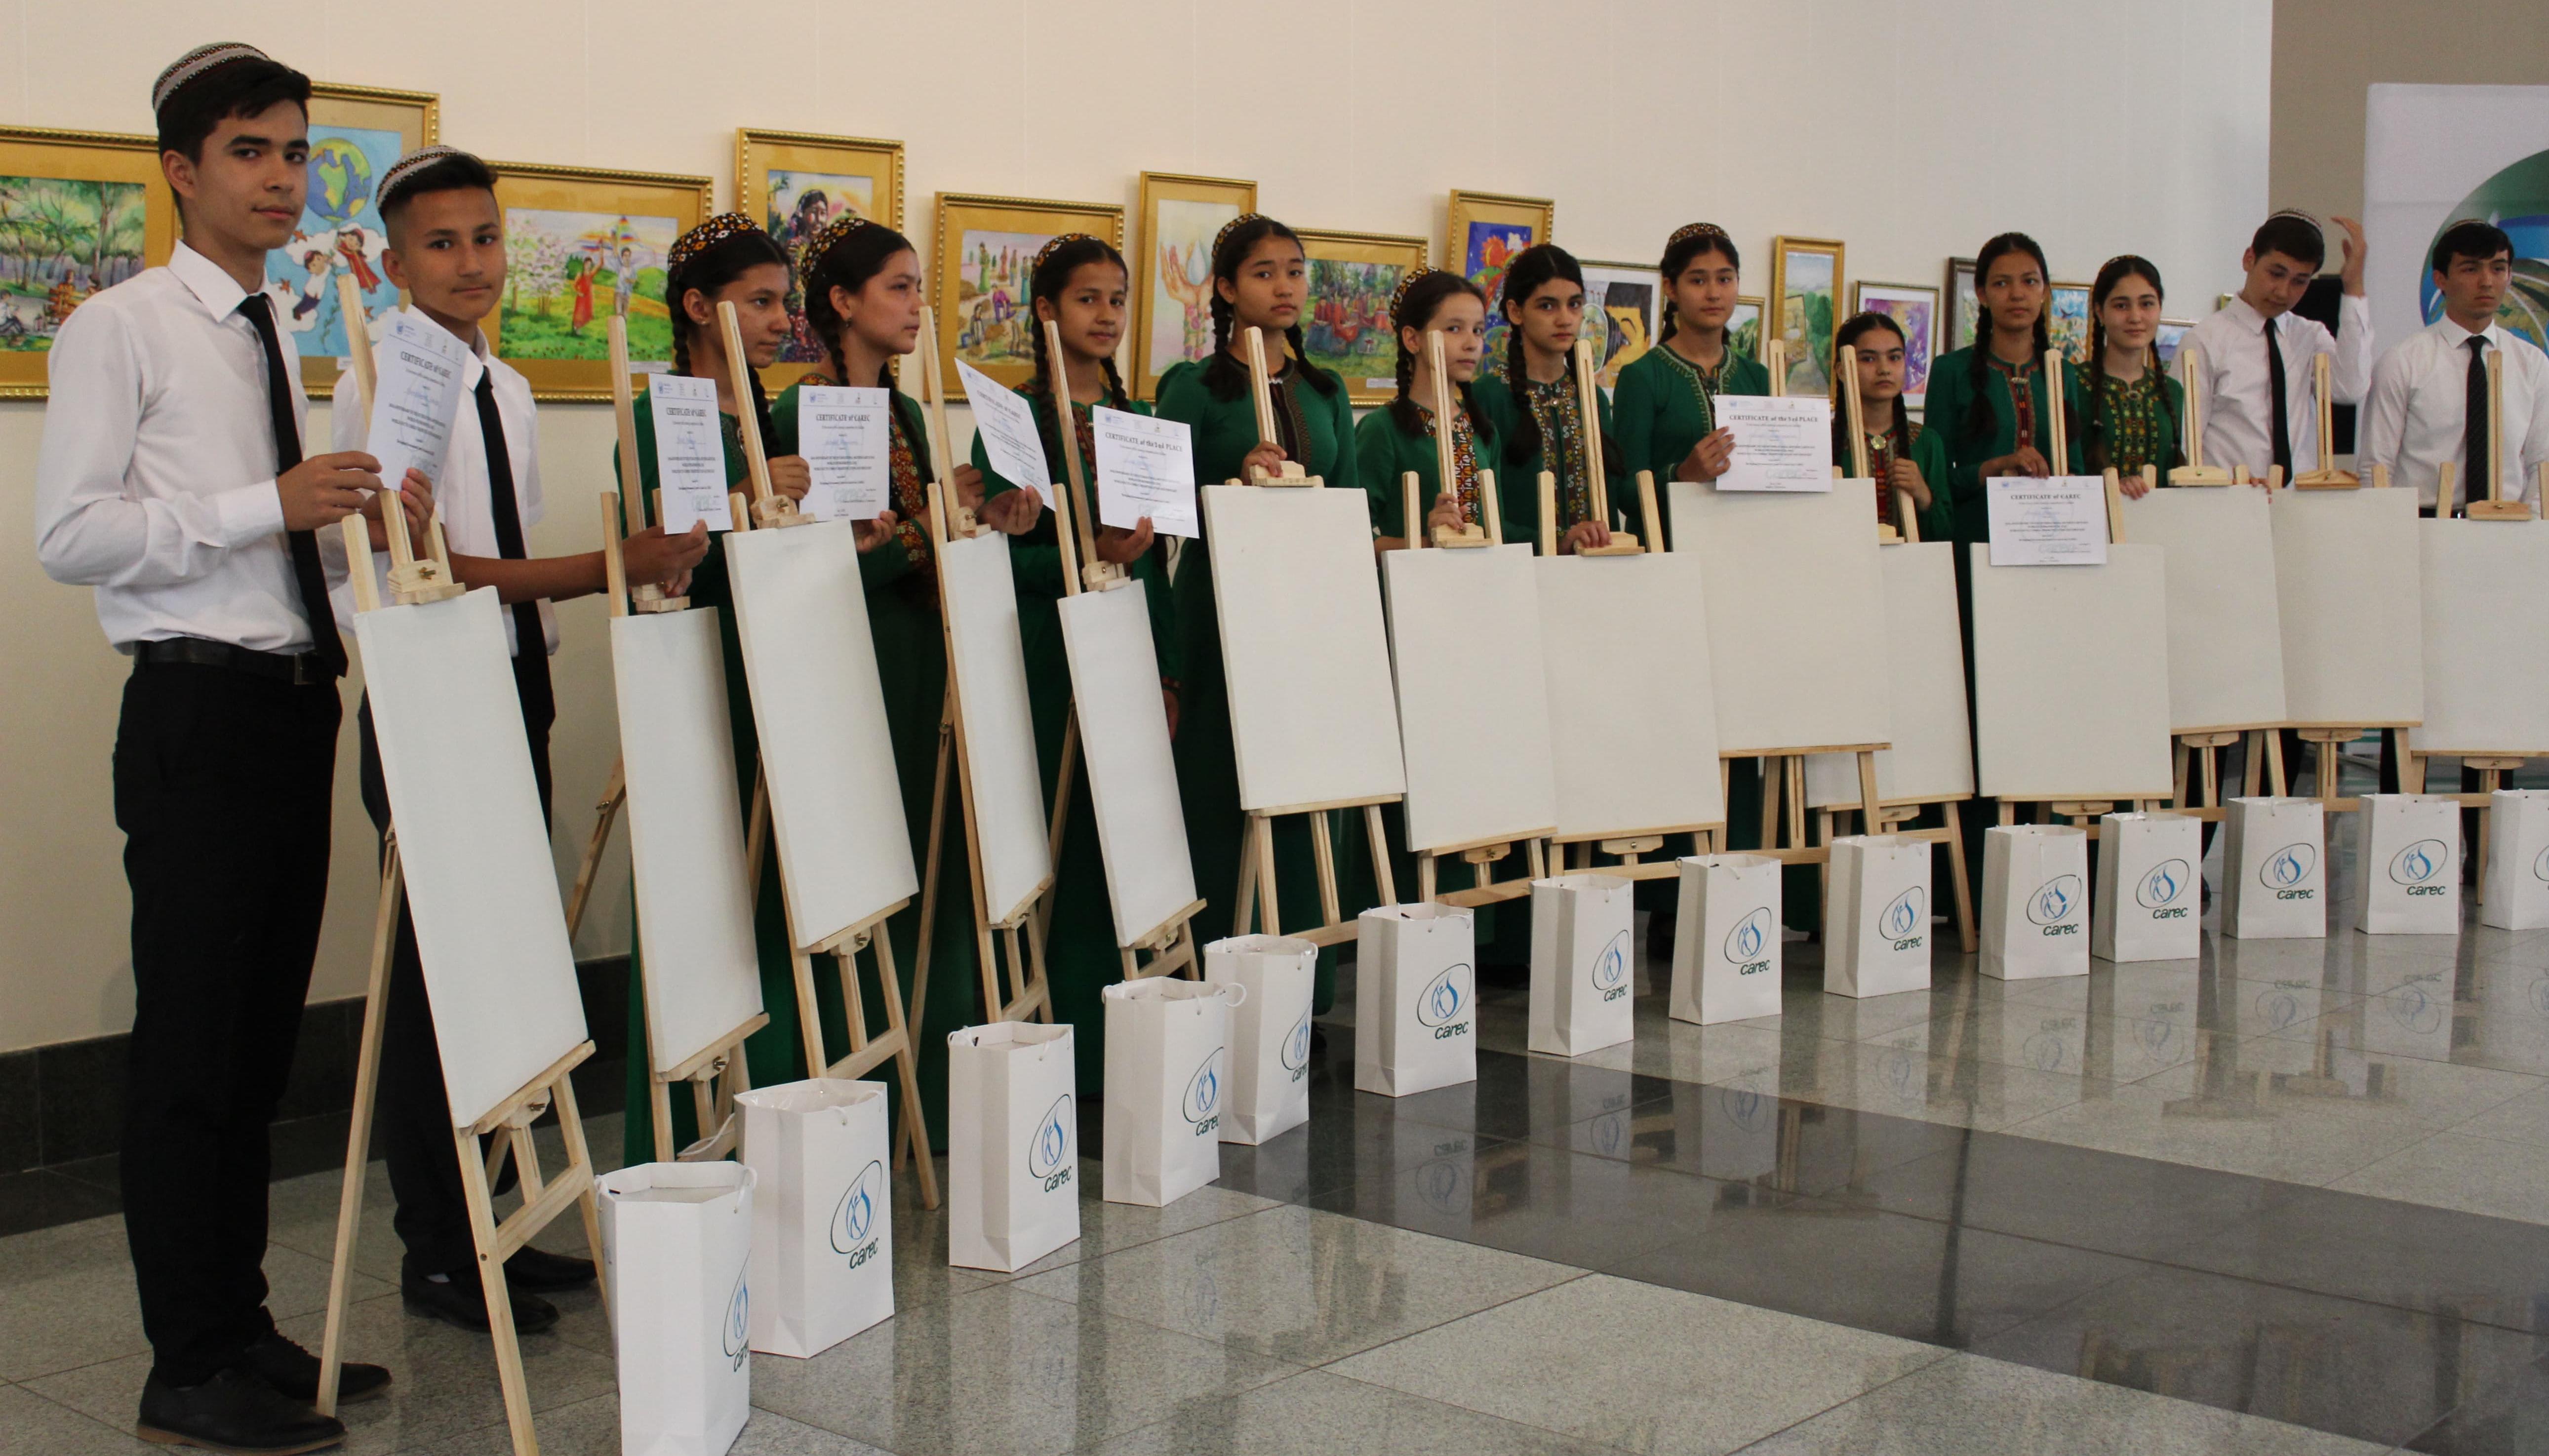 Конкурс детского рисунка, приуроченный к 50-тилетию Дня защиты Земли, Дню охраны природы в год 25-тилетия Независимости Туркменистана, и Дню борьбы с опустыниванием и засухой.